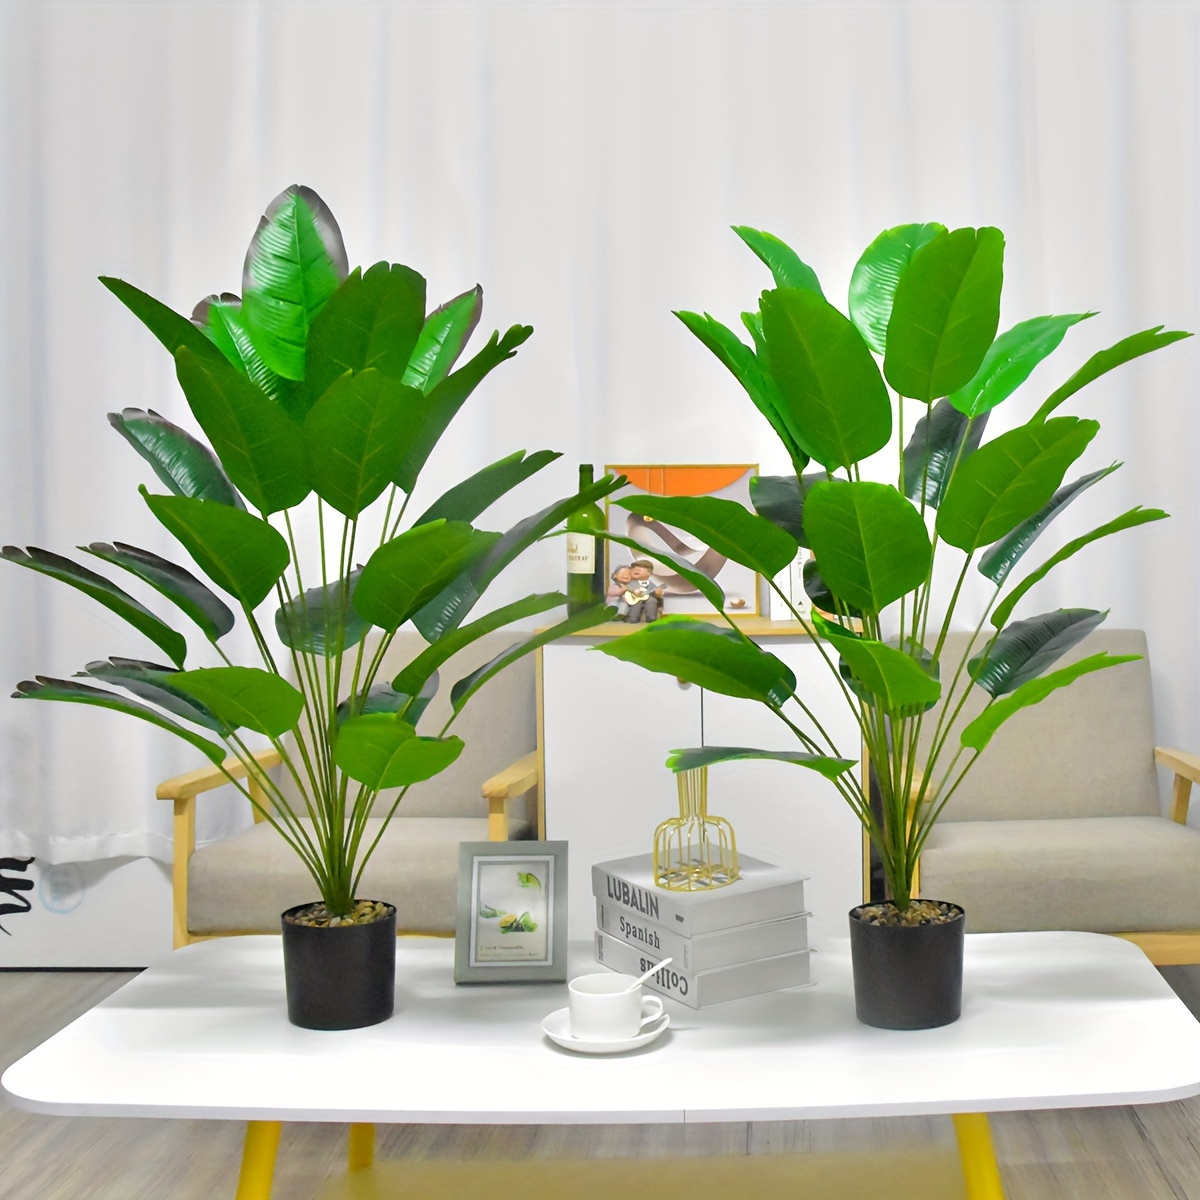 Planta artificial grande, planta decorativa realista ave del paraíso